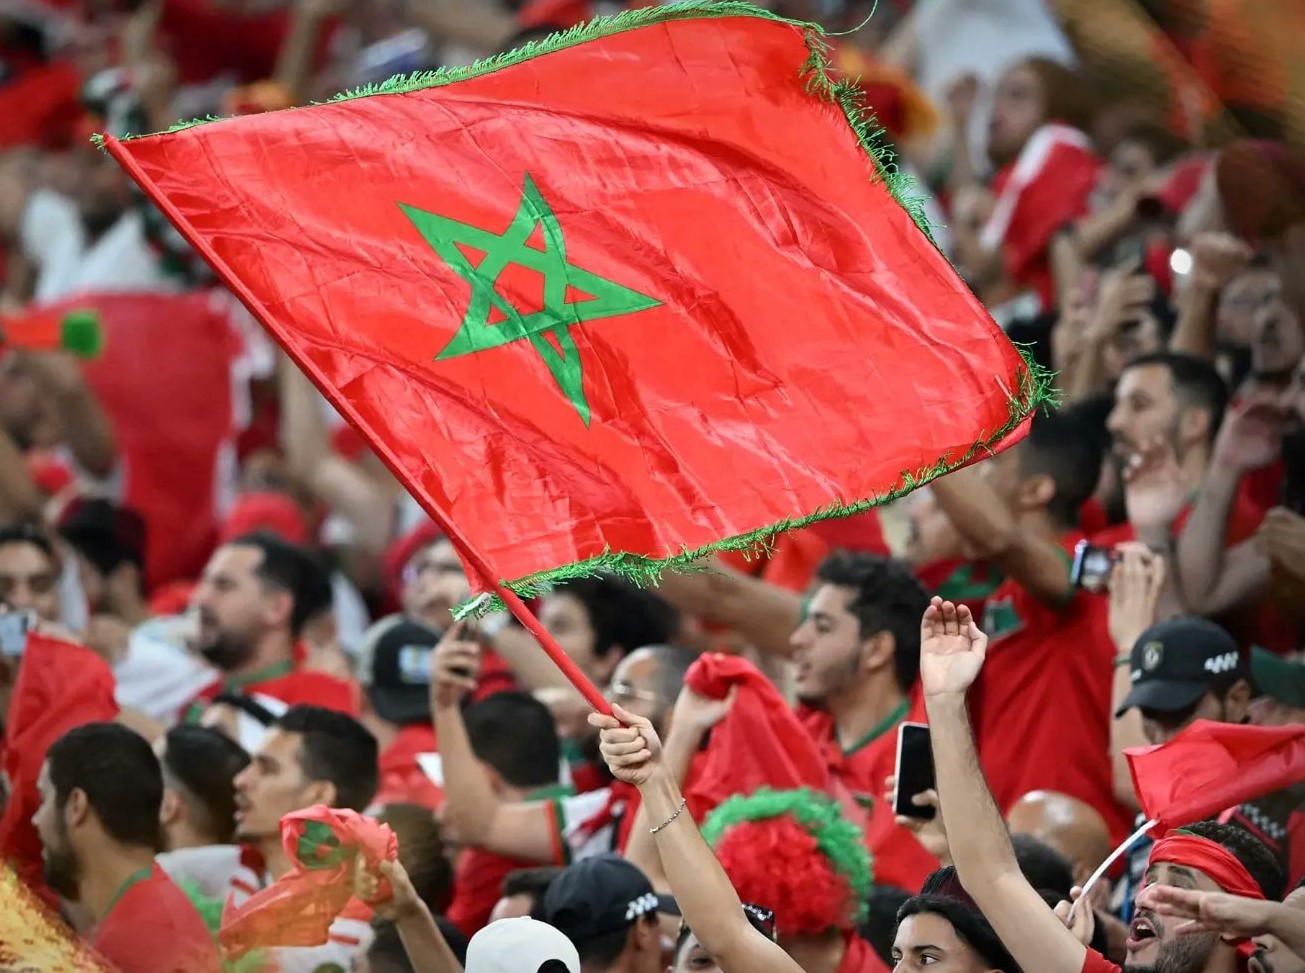 مشاركة المغرب في “الشان”. التايب يكتب: حتى تكون الأمور واضحة